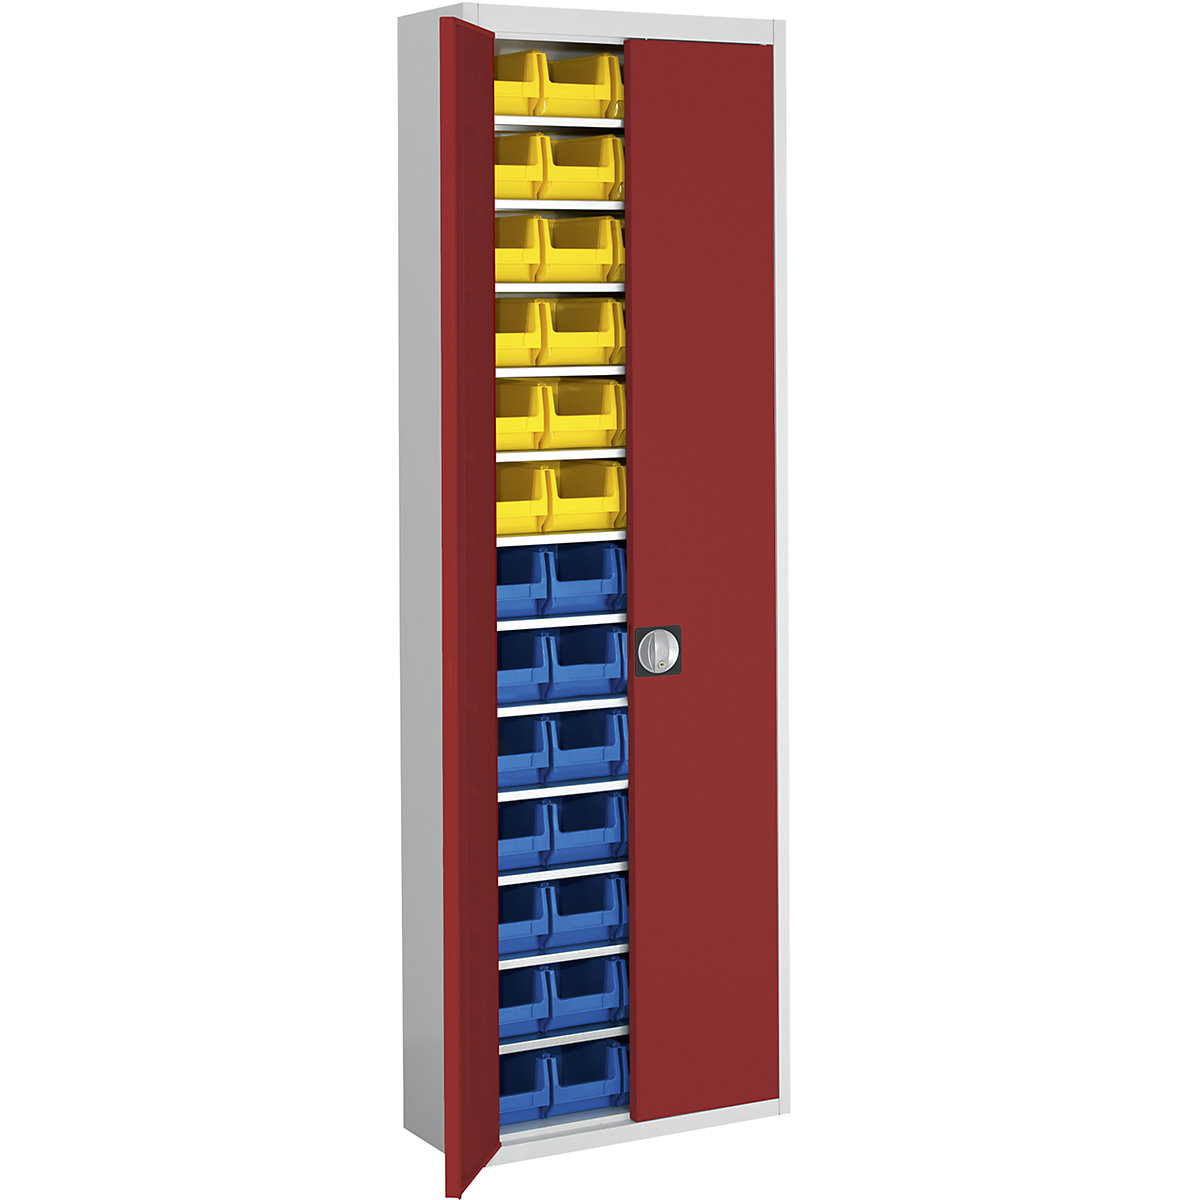 Skladišni ormar s otvorenim skladišnim kutijama – mauser, VxŠxD 2150 x 680 x 280 mm, u dvije boje, korpus u sivoj boji, vrata u crnoj boji, 52 kutije-13